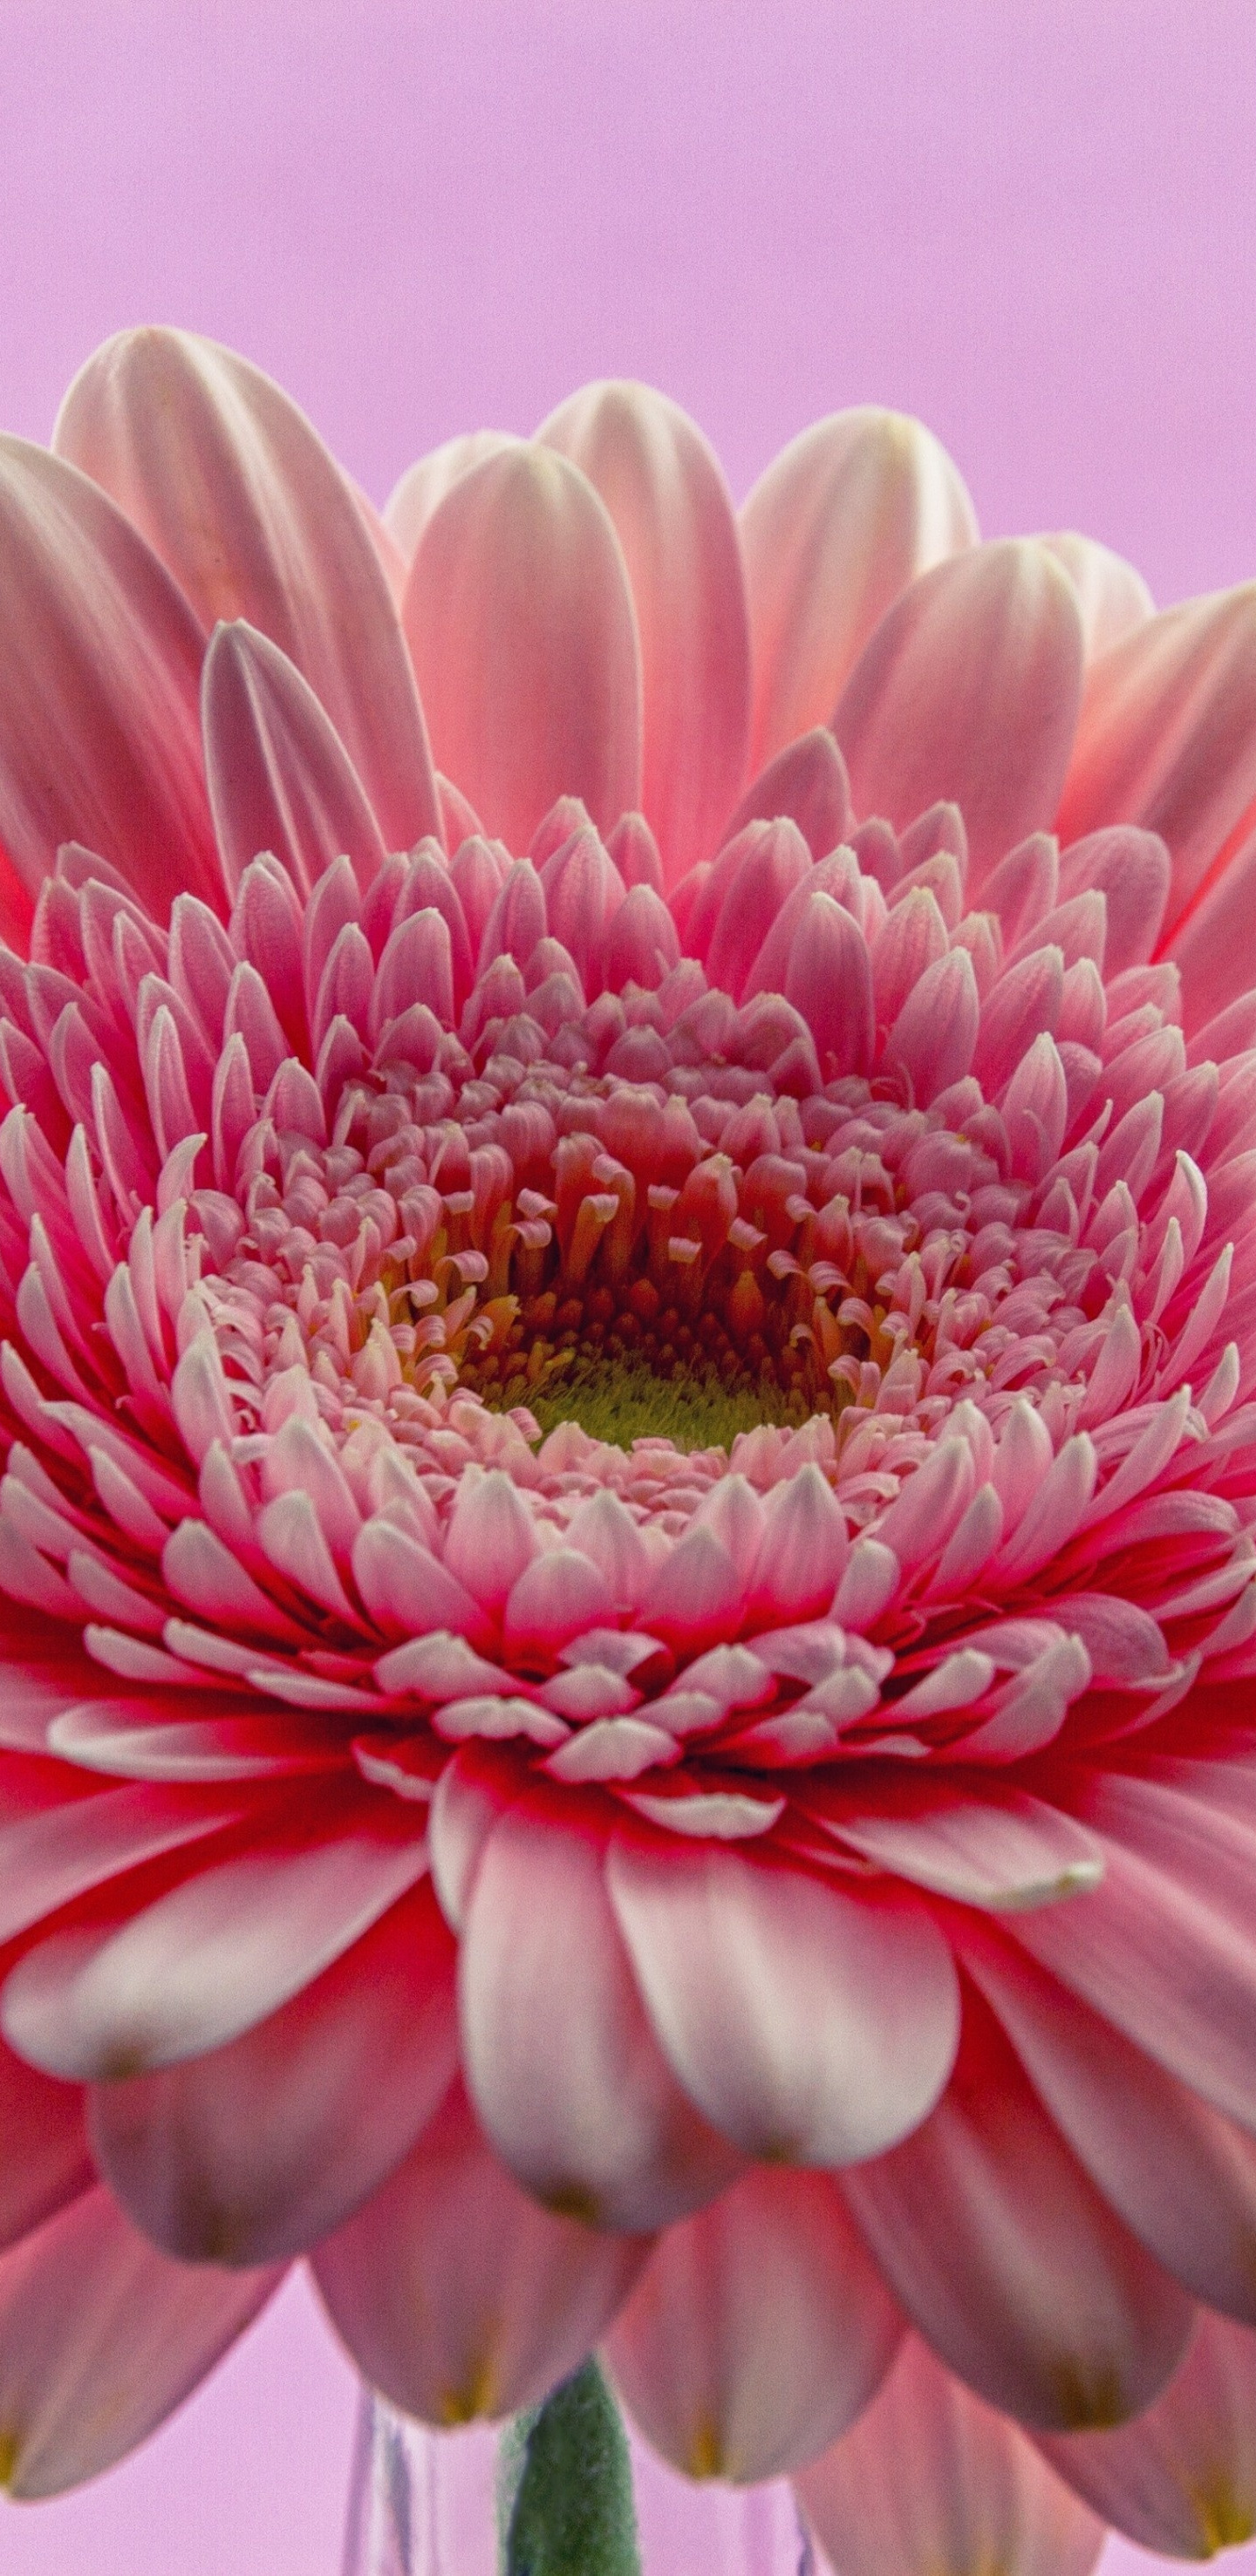 Download 1440x2960 wallpaper gerbera, flower, pink, close up ...